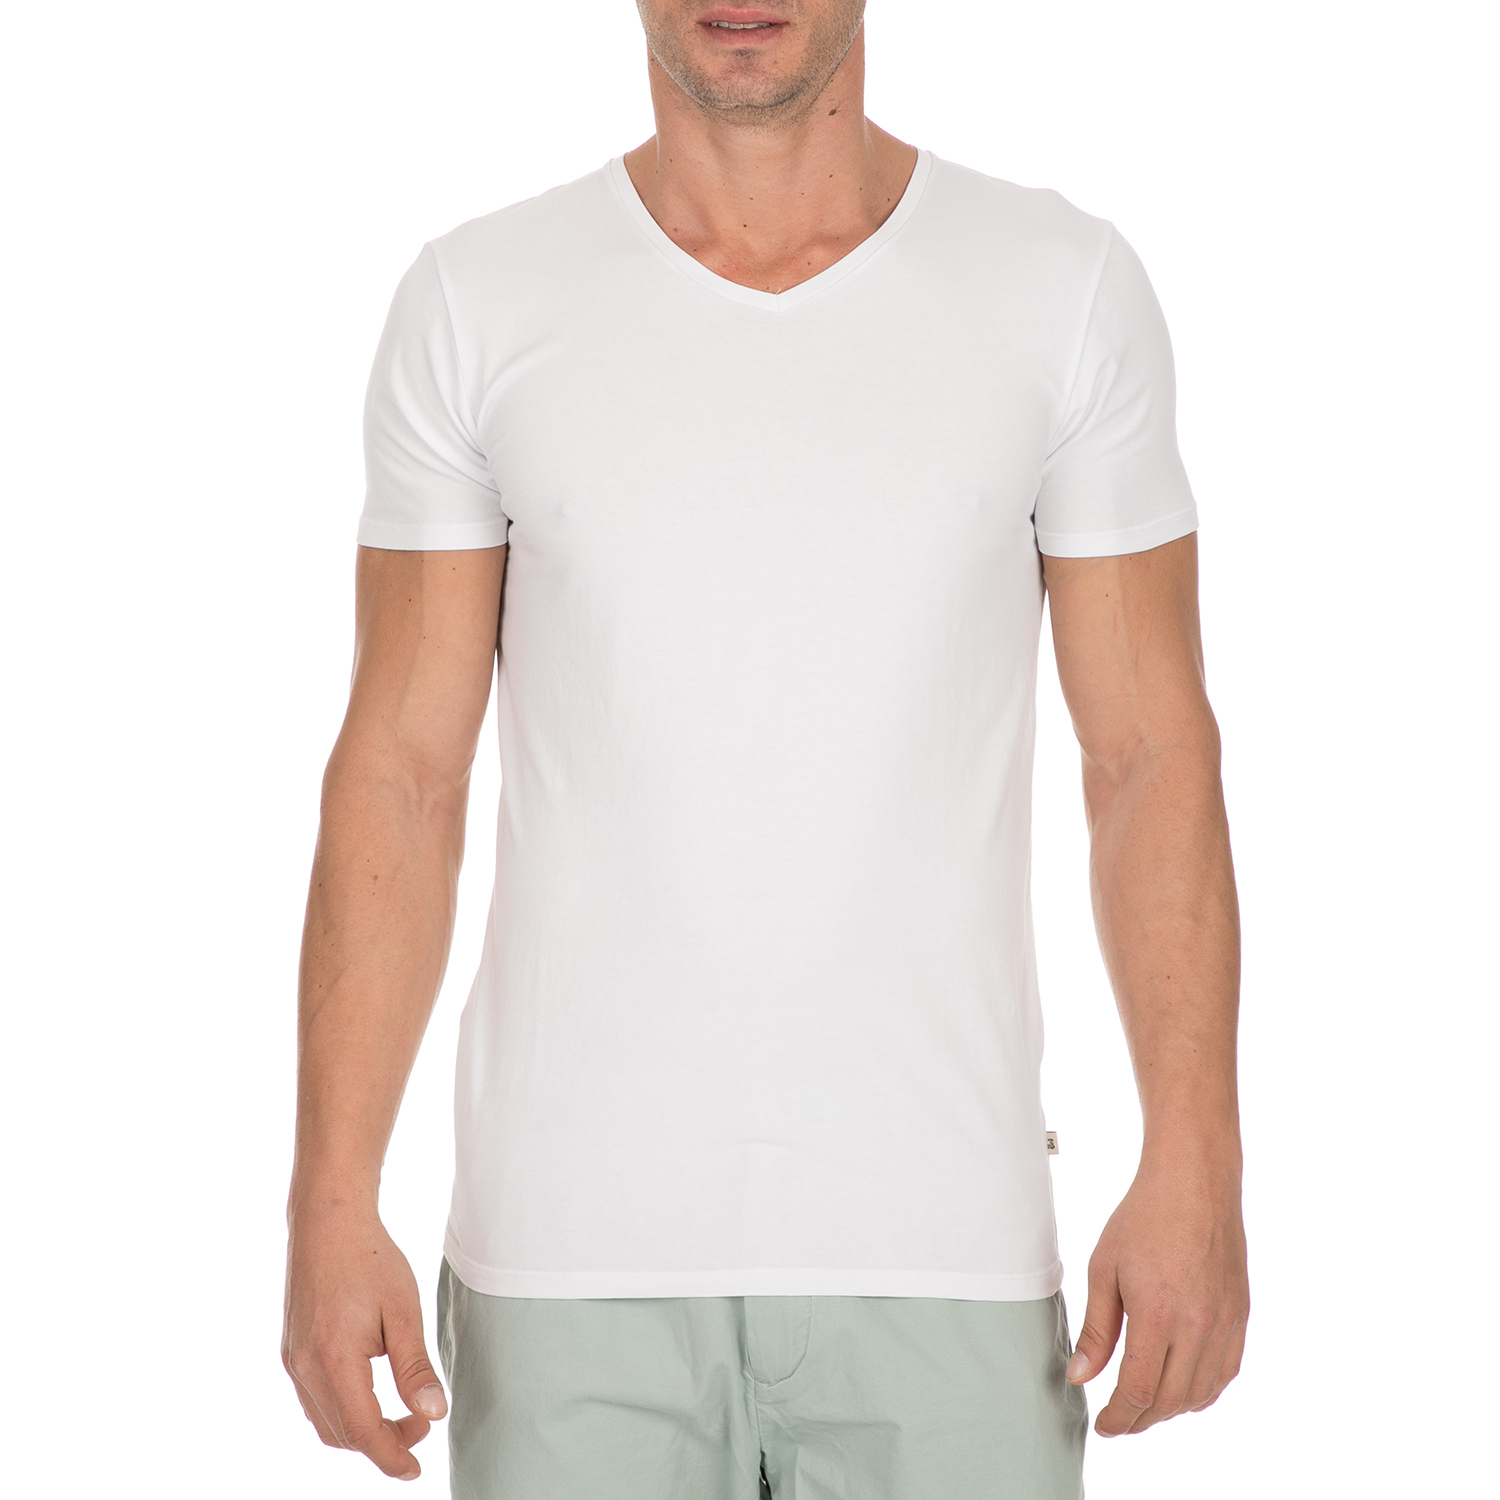 Ανδρικά/Ρούχα/Μπλούζες/Κοντομάνικες SCOTCH & SODA - Ανδρικό t-shirt SCOTCH & SODA λευκό